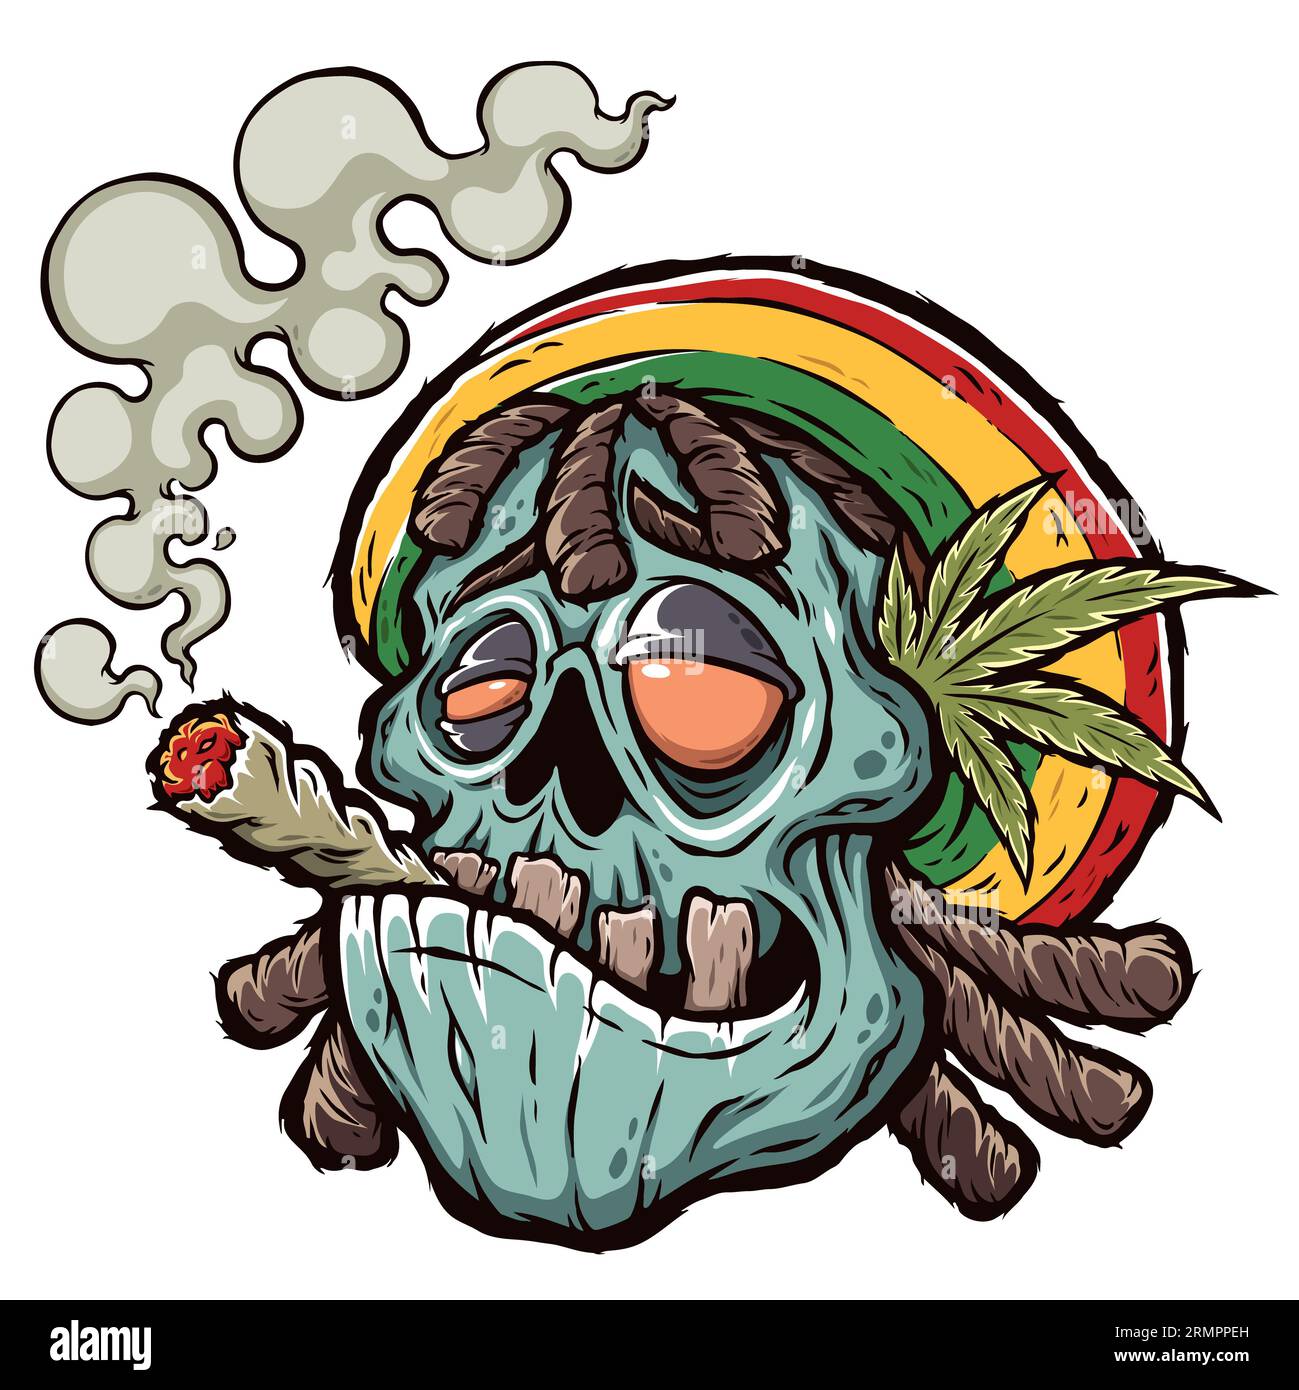 Illustration vectorielle de Cartoon Zombie fume une cigarette avec de la marijuana, du rastaman, des feuilles de cannabis, une impression pour des t-shirts Banque D'Images